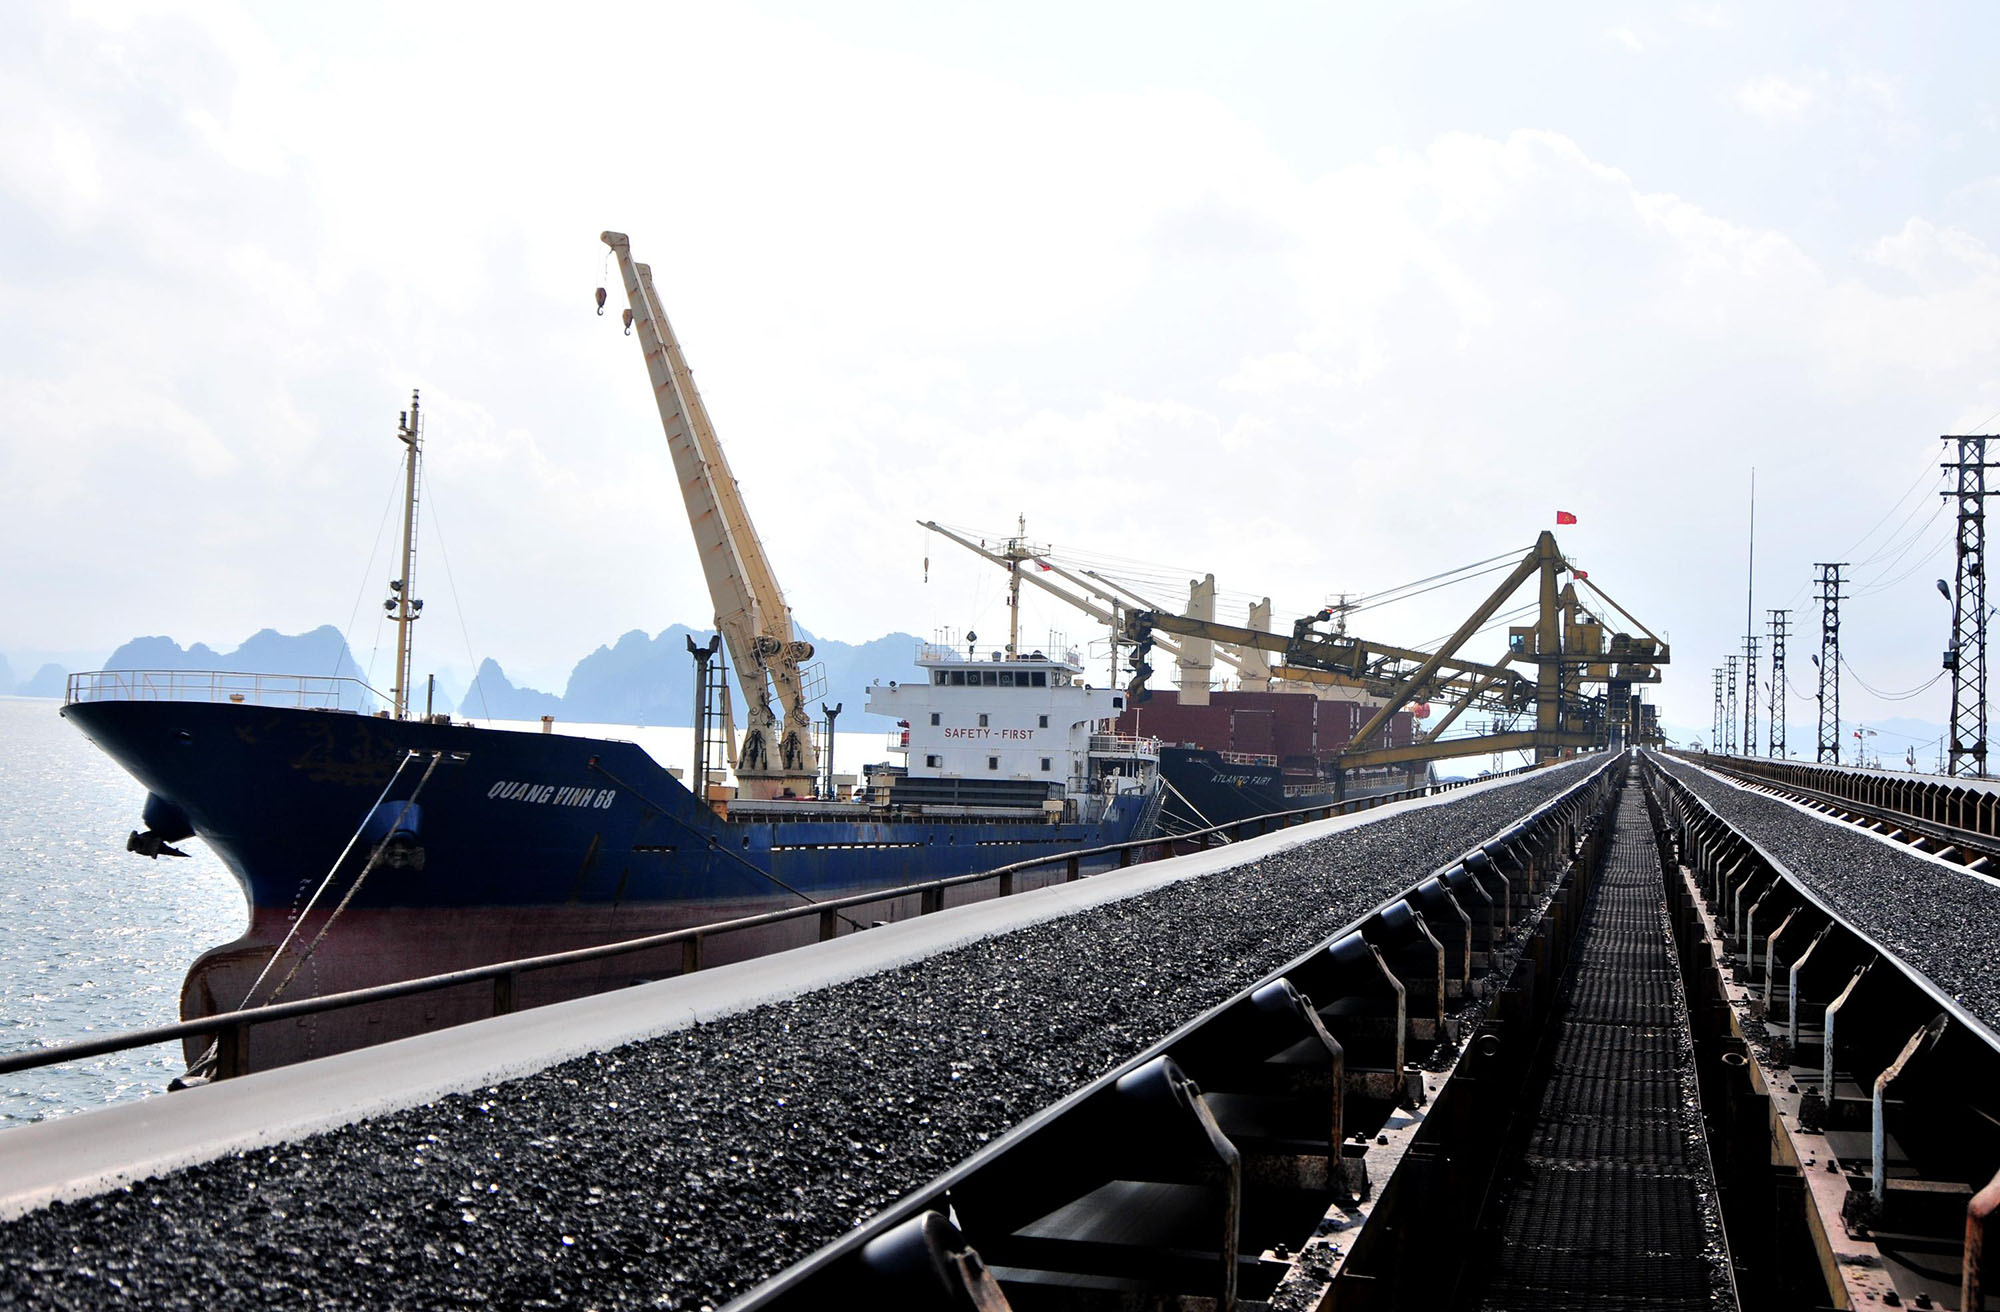 Hệ thống dây chuyền, thiết bị bốc rót, phục vụ tiêu thụ than tại Cảng Cẩm Phả.